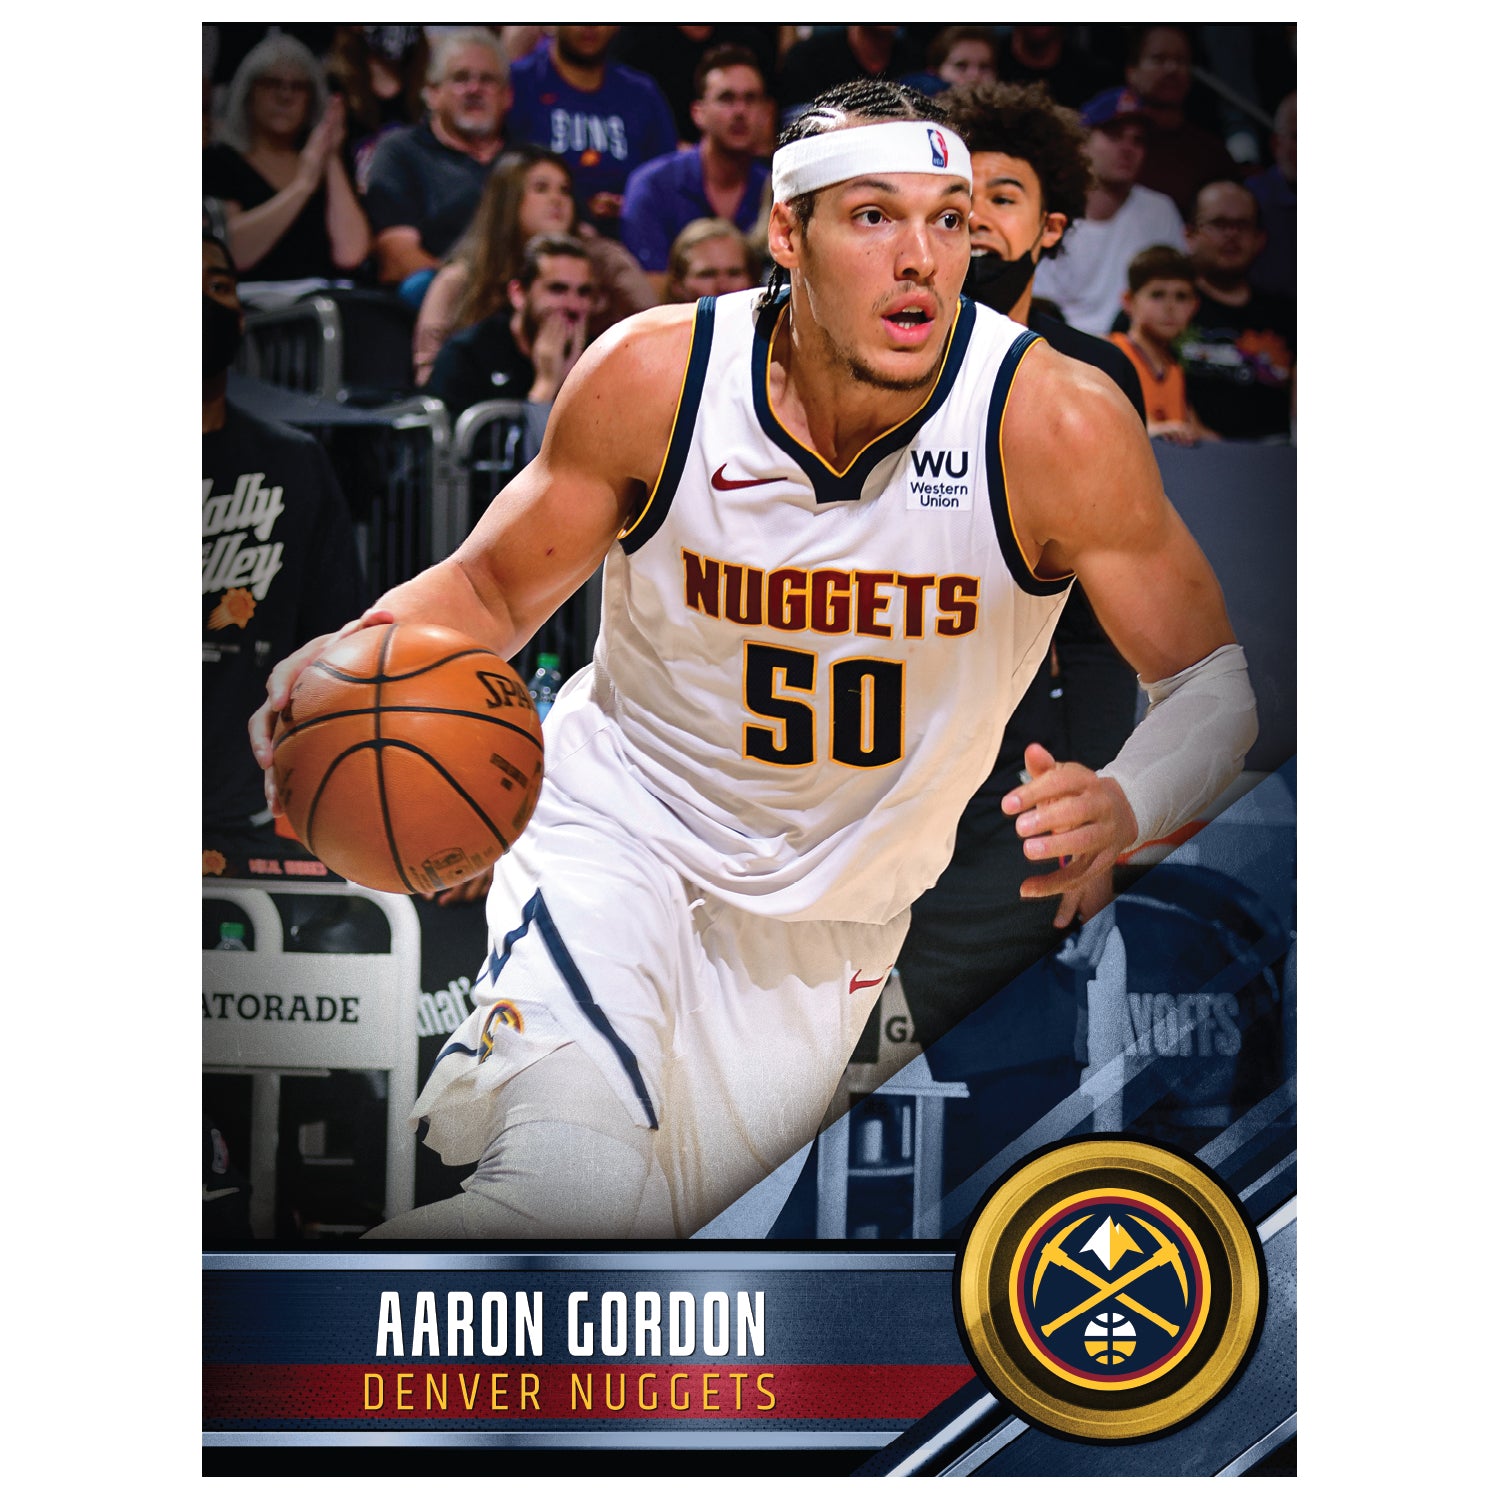 Denver Nuggets: Aaron Gordon 2021 Poster - Officially Licensed NBA Rem